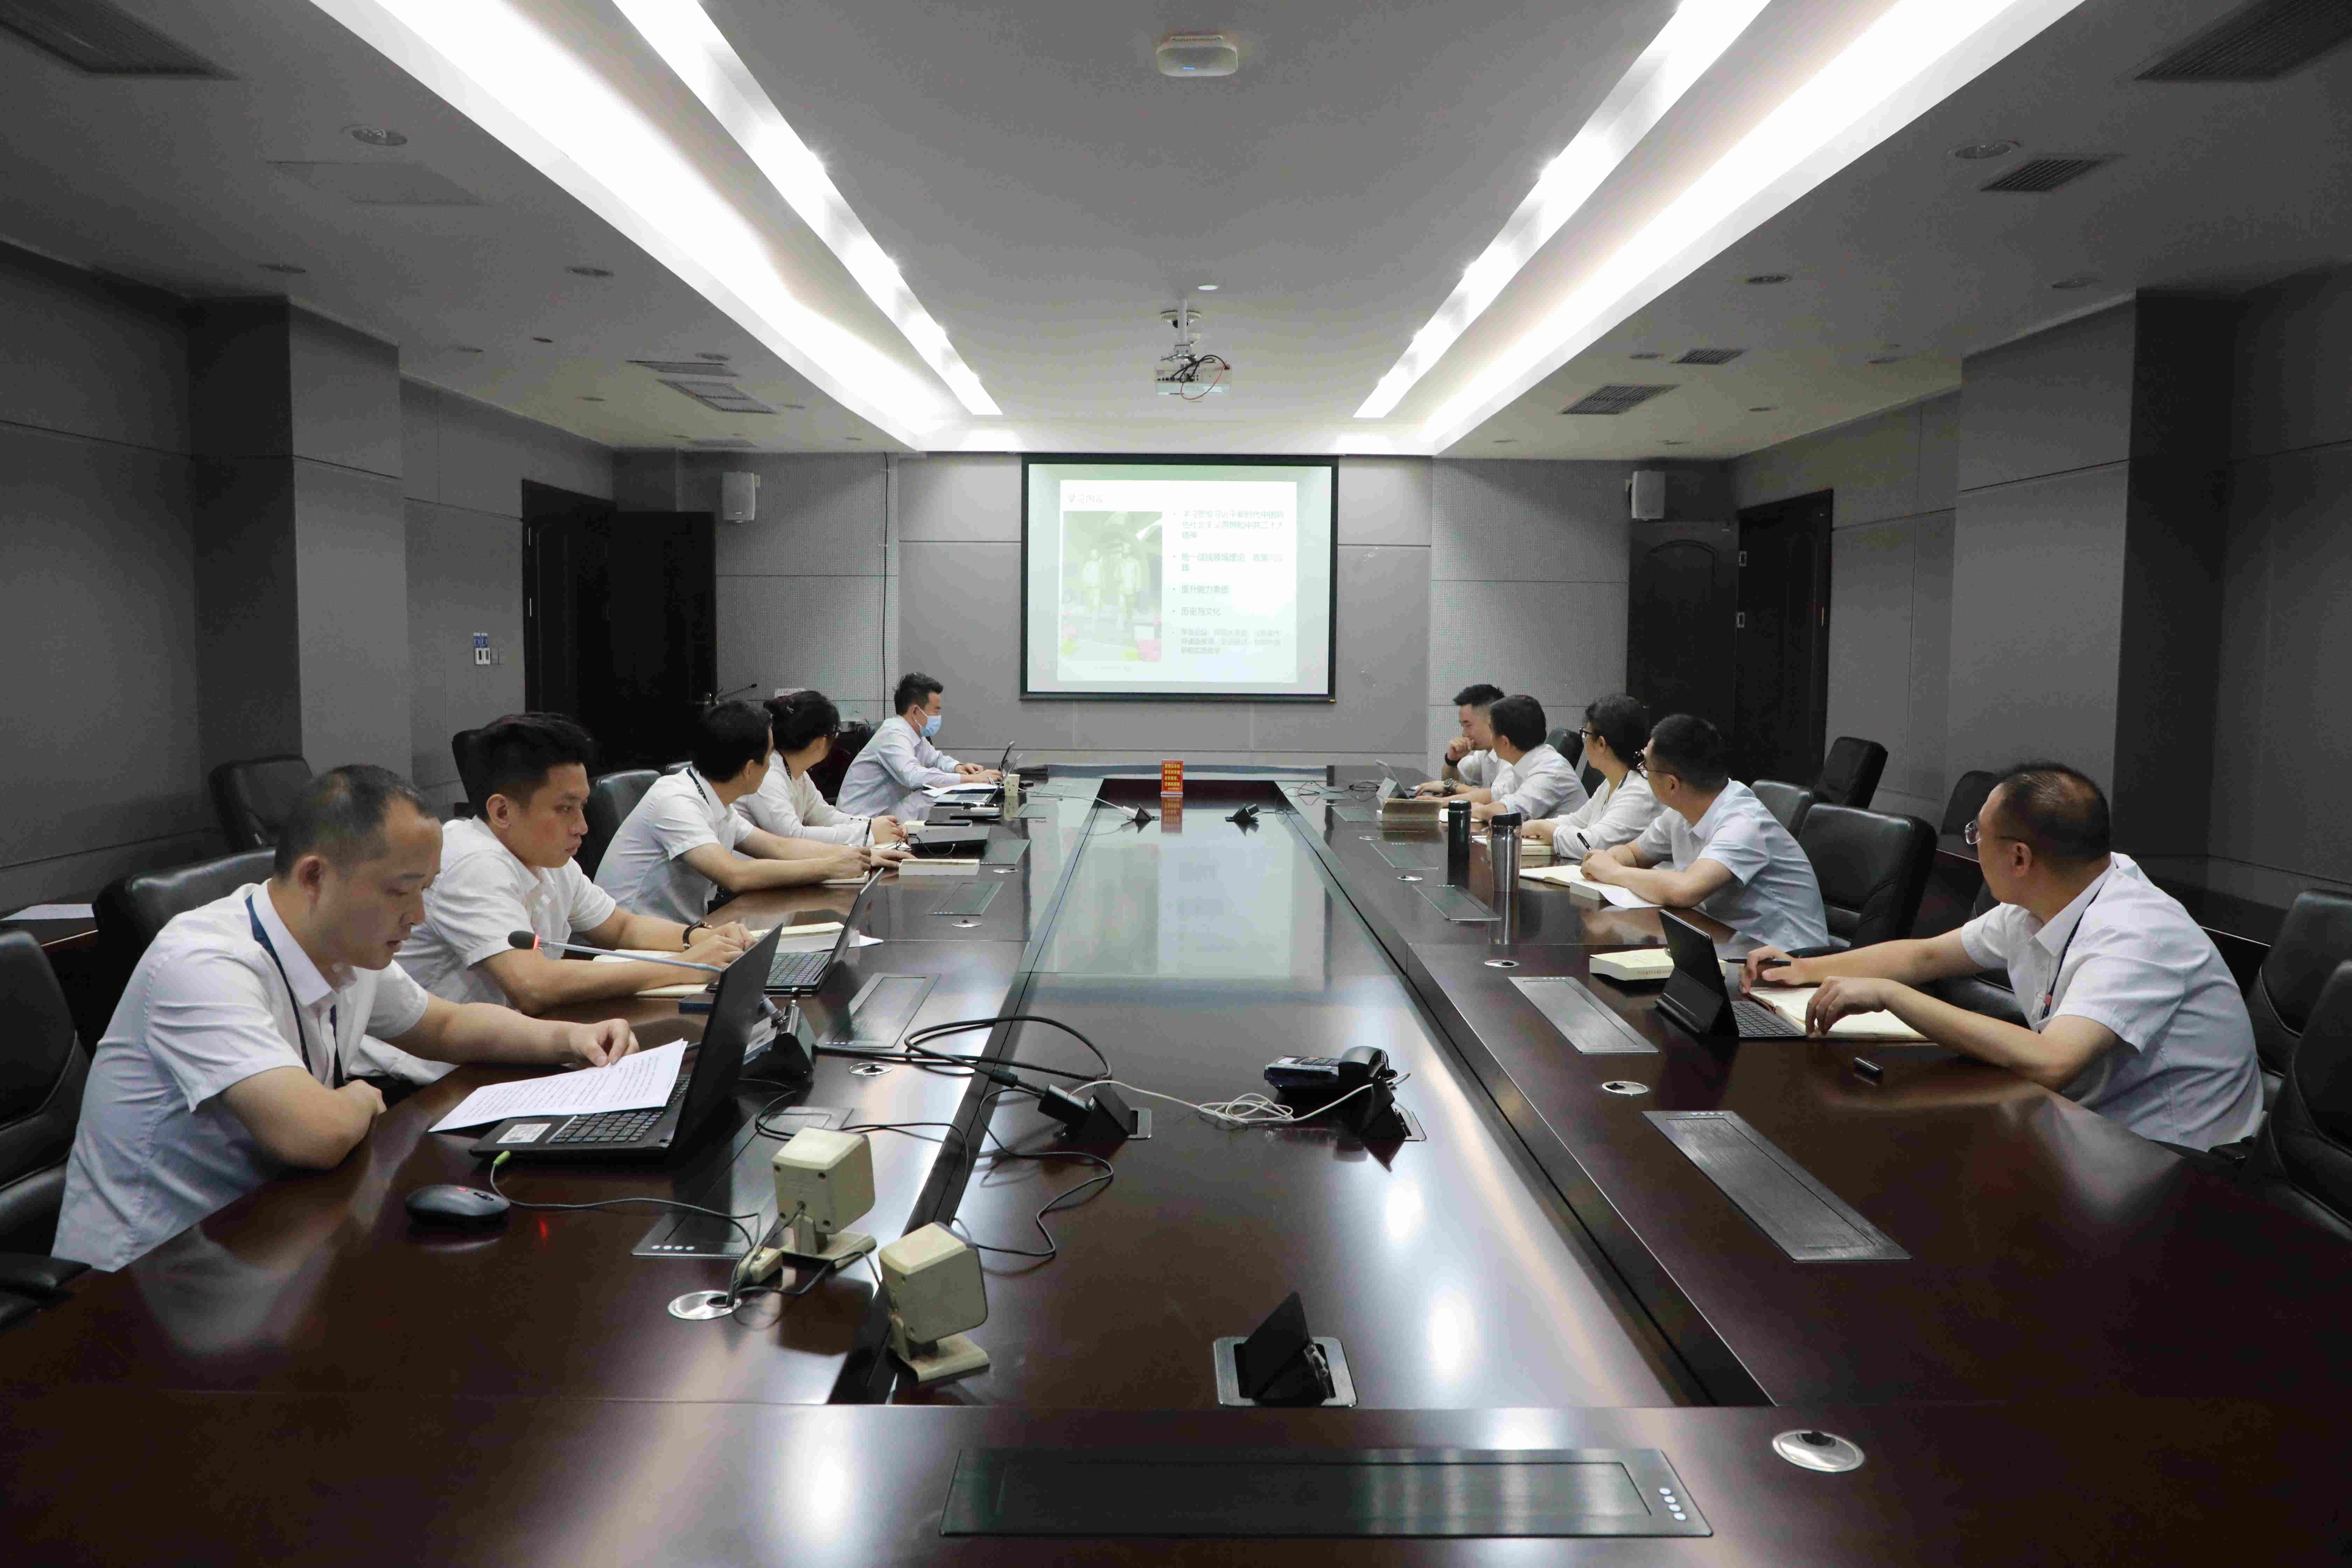 重庆空管分局技术保障部党总支推进主题教育与干部队伍教育整顿有机融合